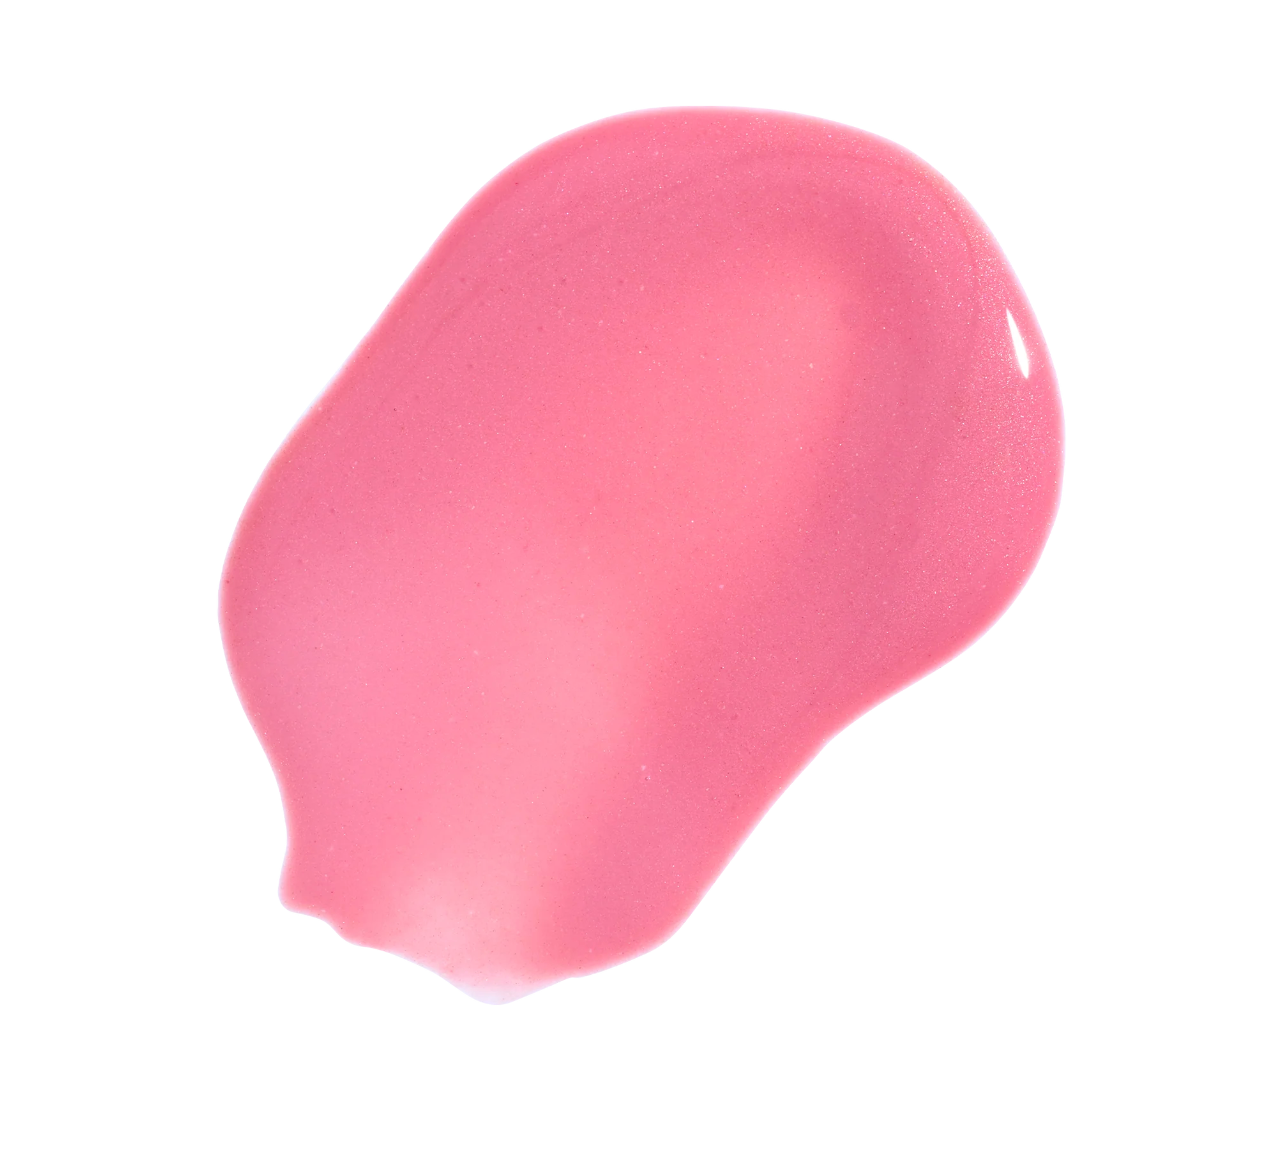 Colorescience Lip Shine SPF 35 PINK